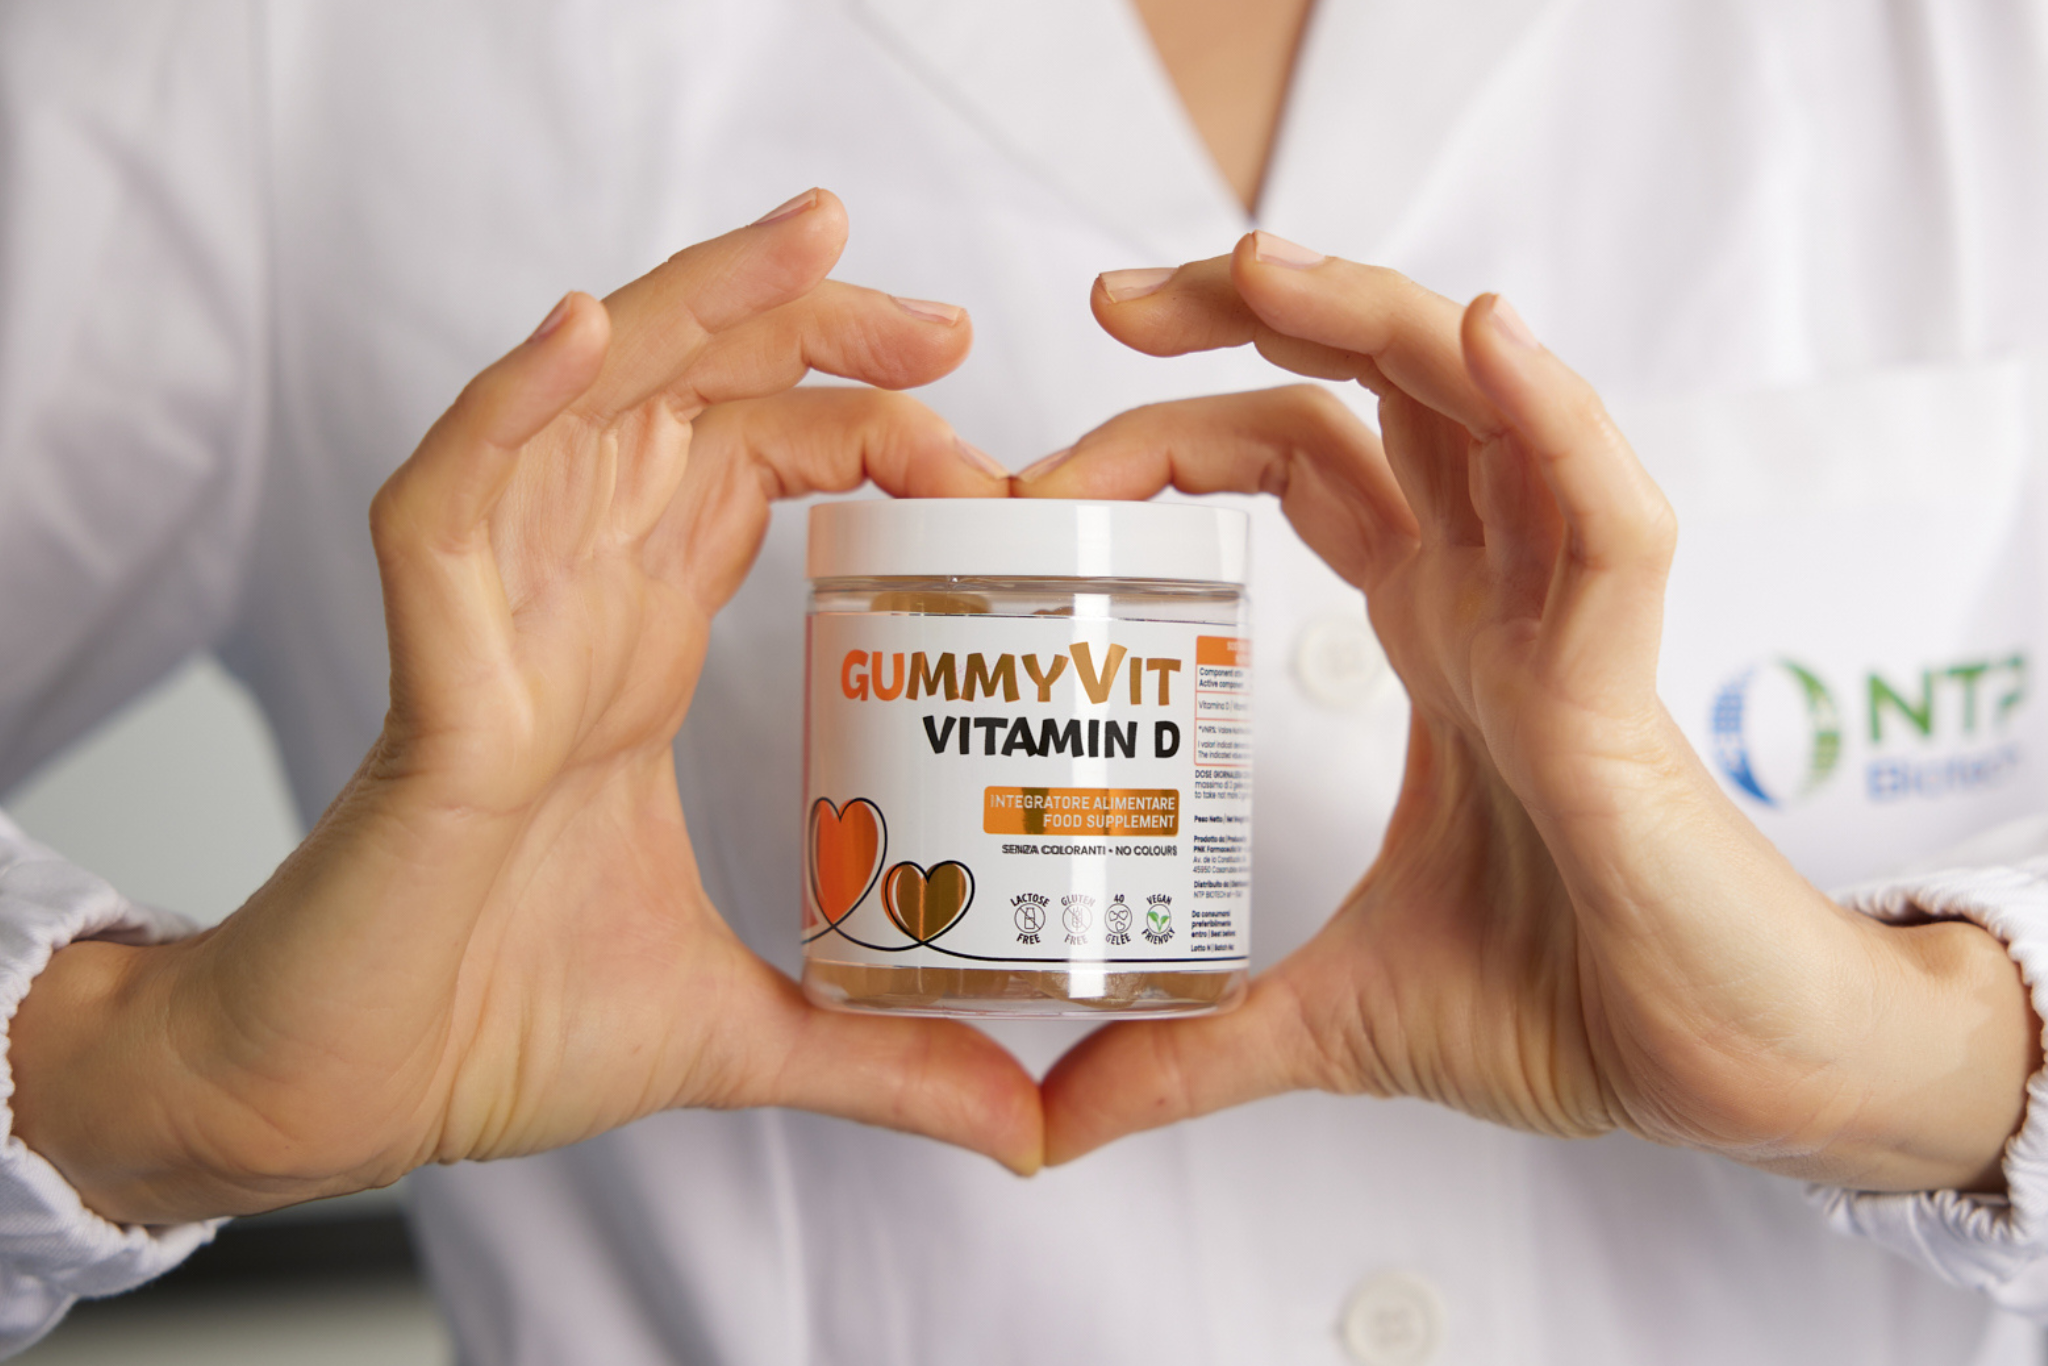 Immagine illustrativa che evidenzia come l'integrazione giornaliera con Gummyvit Vitamin D possa contribuire significativamente al benessere generale dell'organismo, adatto anche in gravidanza e allattamento